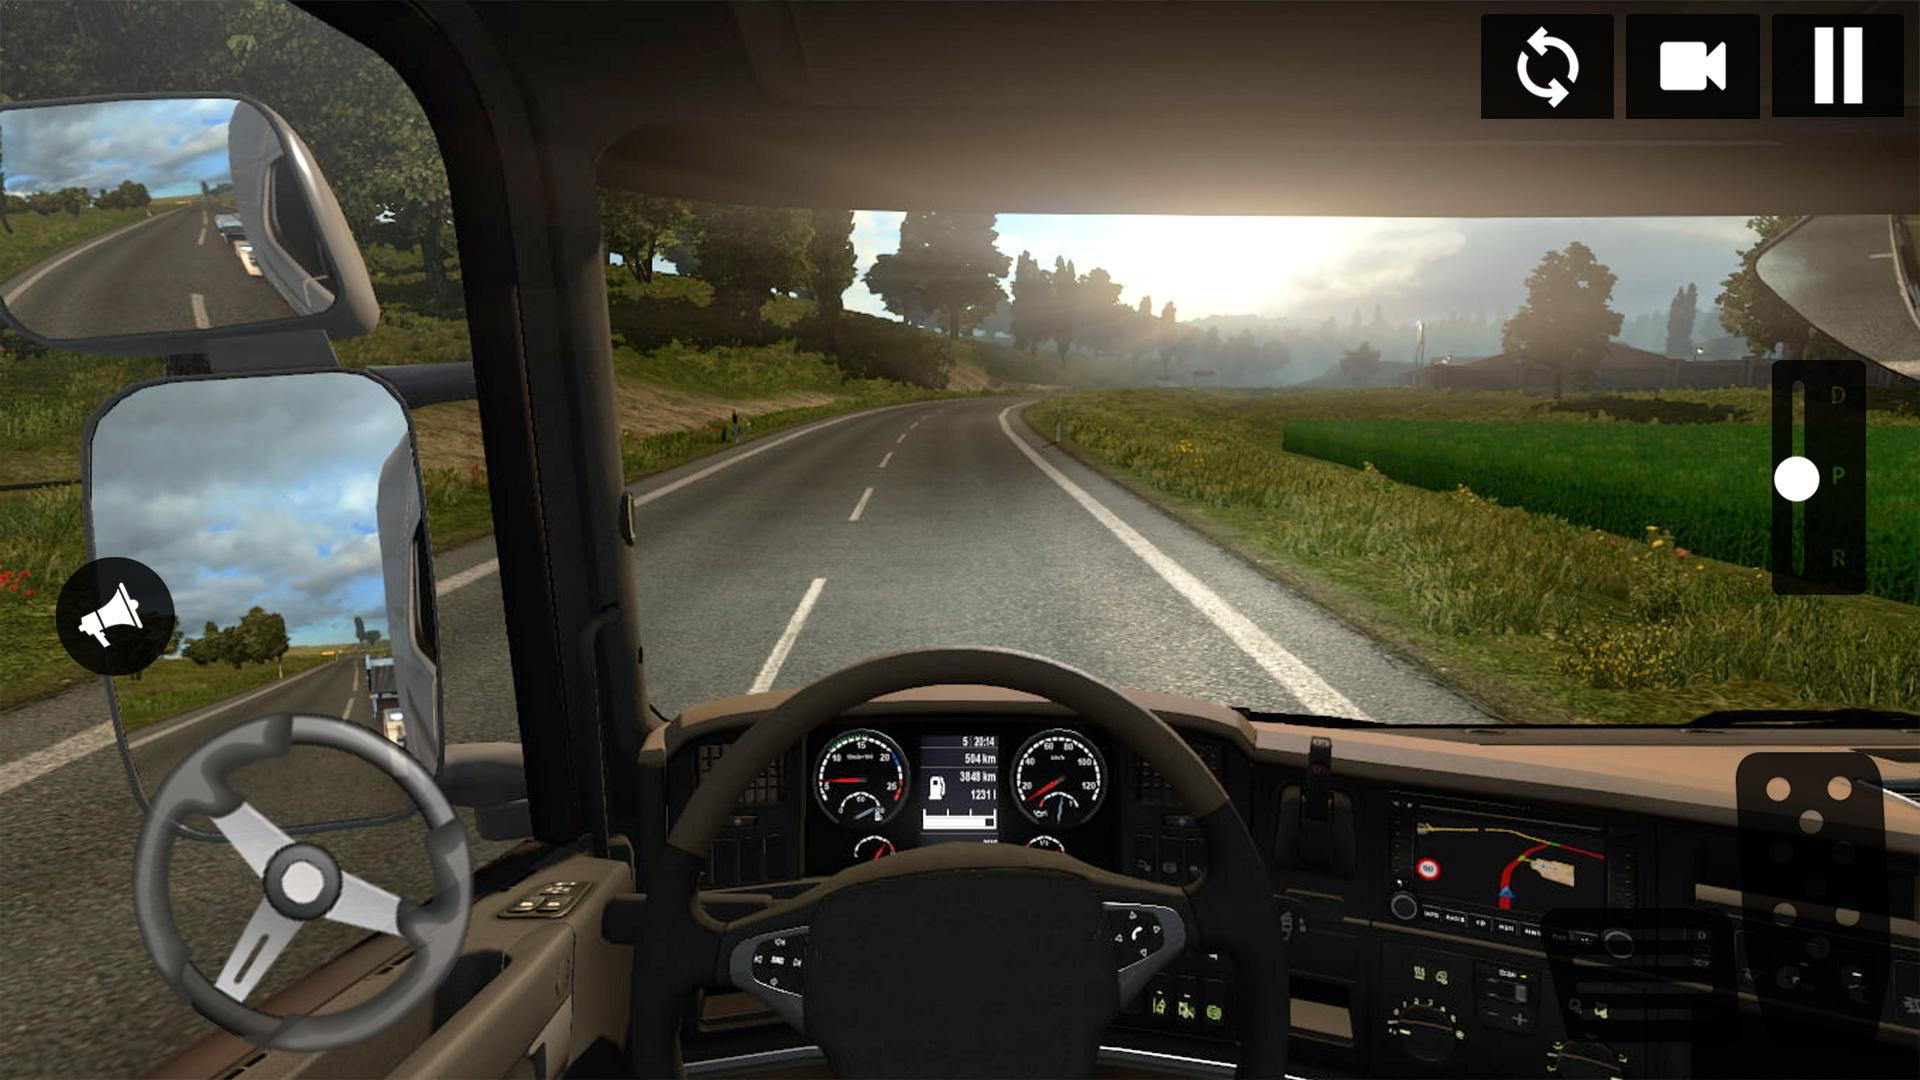 Симуляторы вождения с открытым миром. Евро трак симулятор 3. Етс 2 от первого лица. Euro Truck Simulator от первого лица. Euro Truck Simulator 2 от 1 лица.